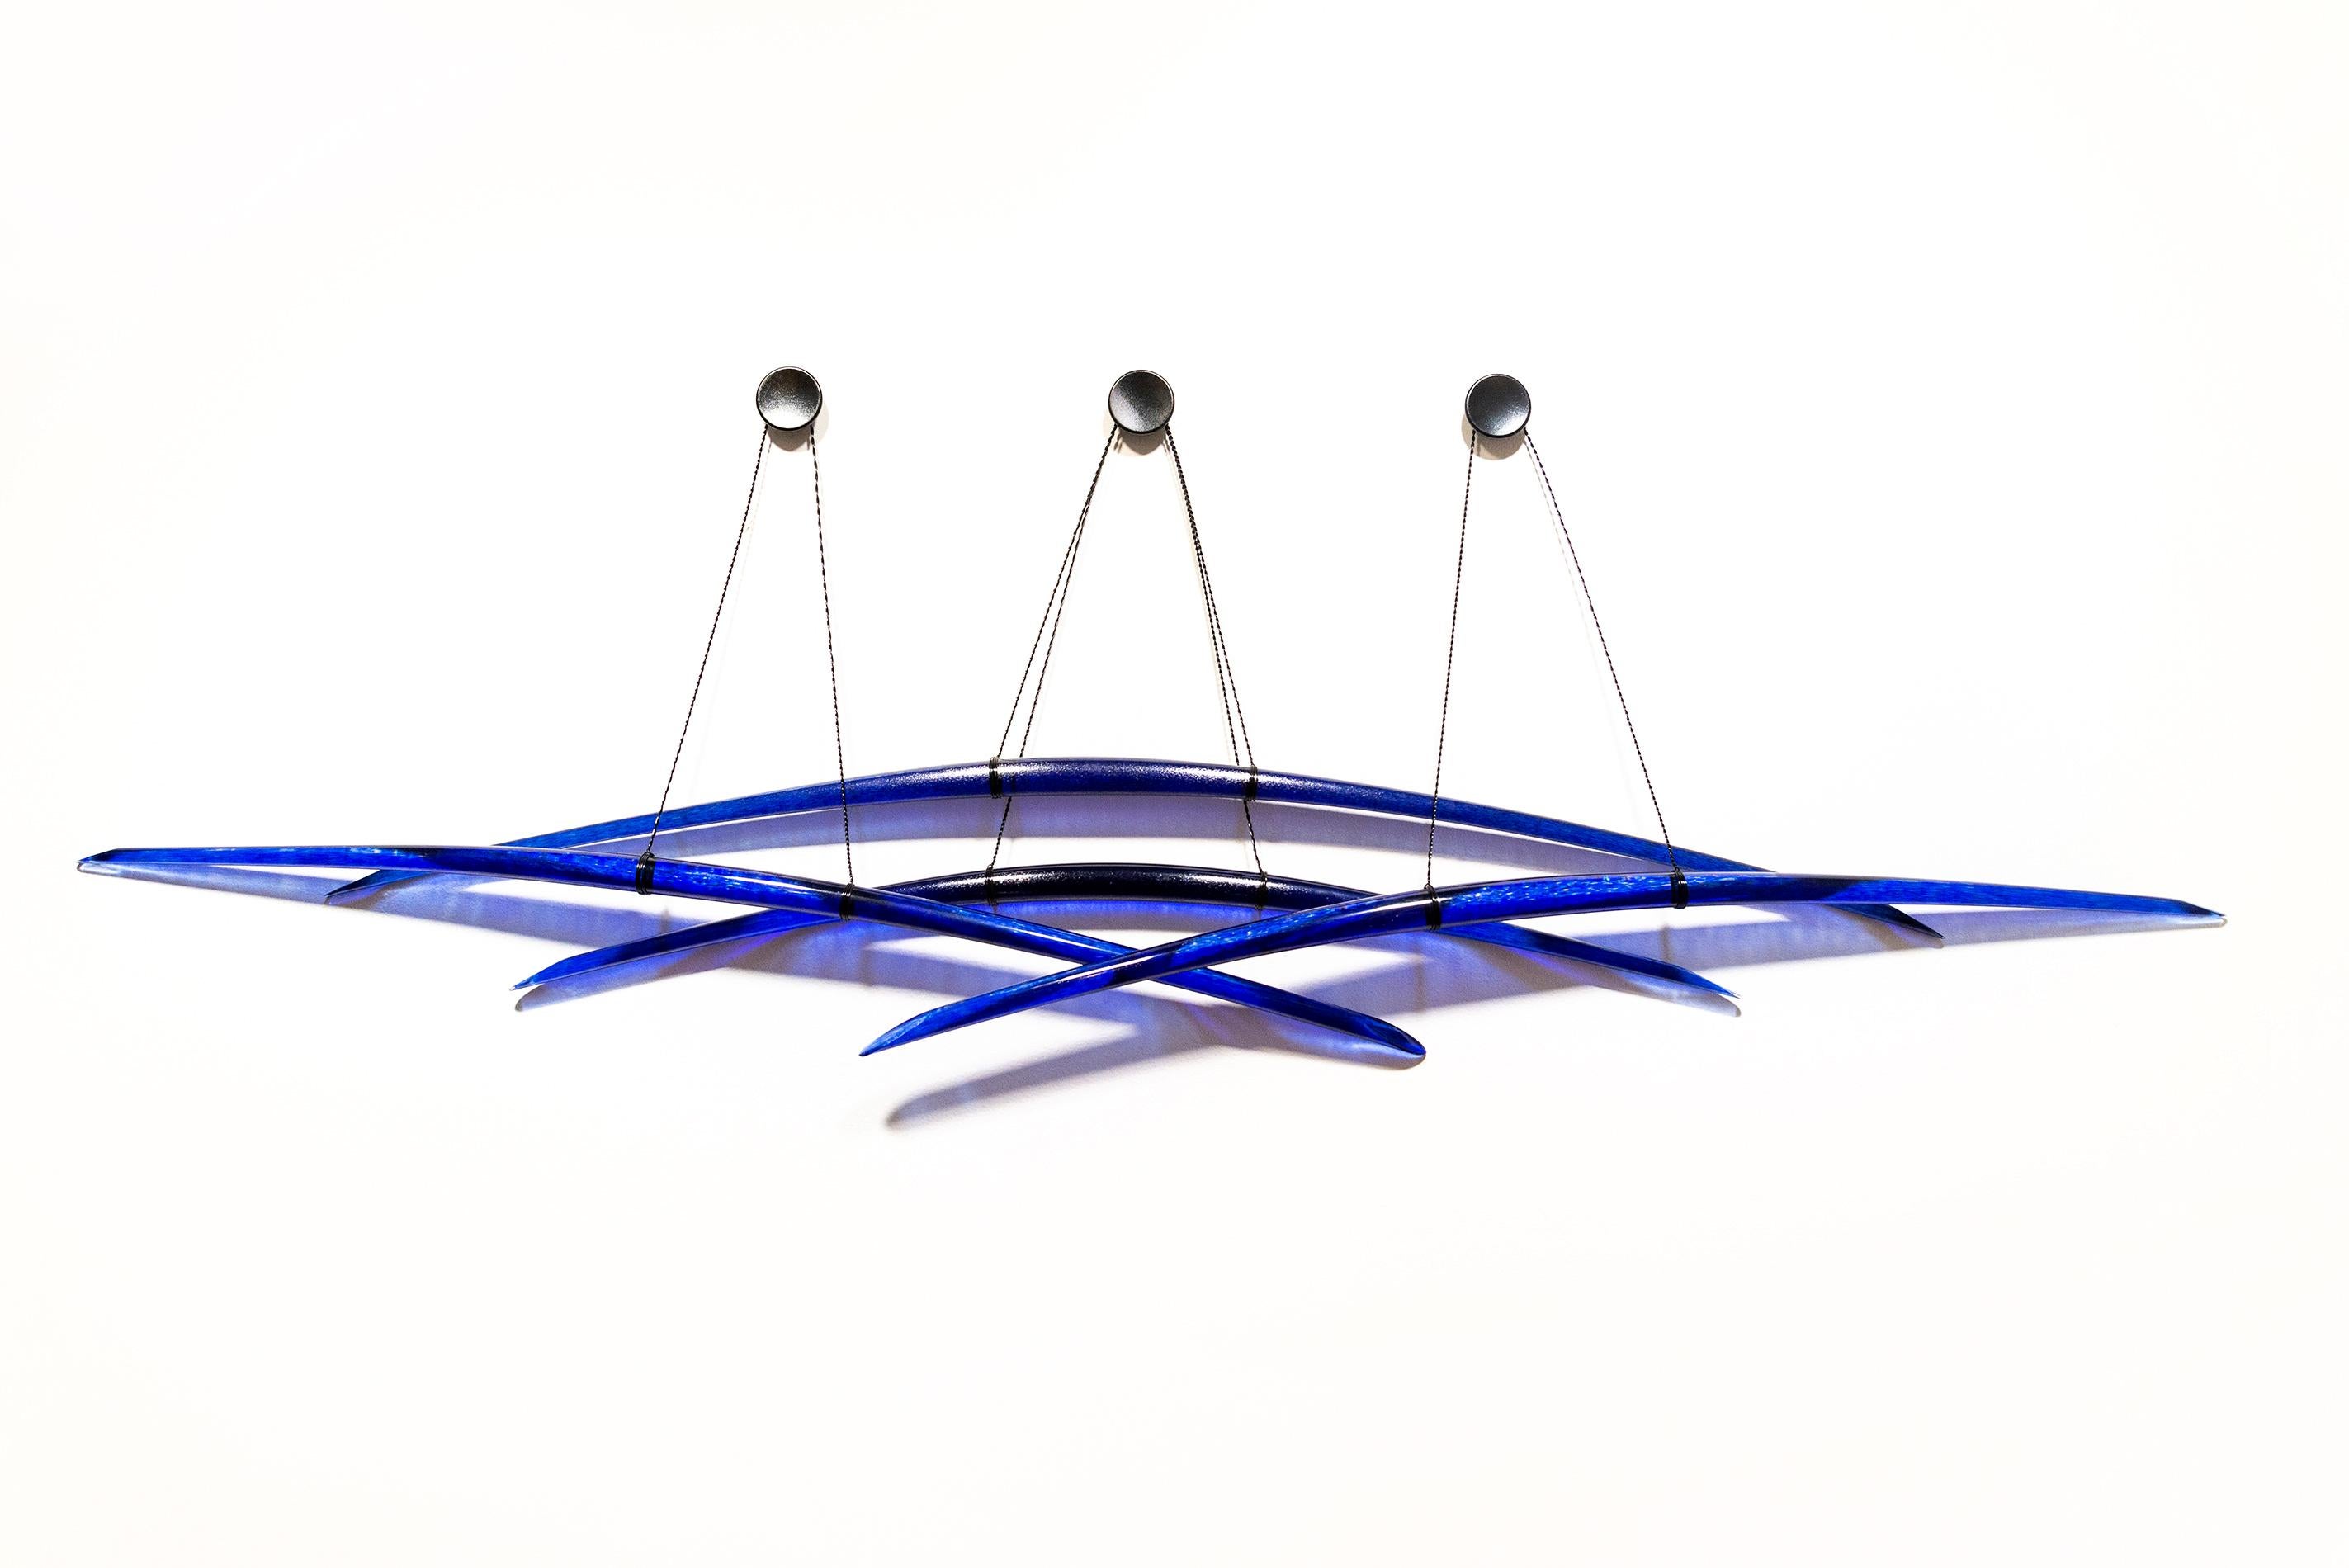 Probability Deep Blue 3 - geschwungen, abstrakt, Glas, elegante Wandskulptur